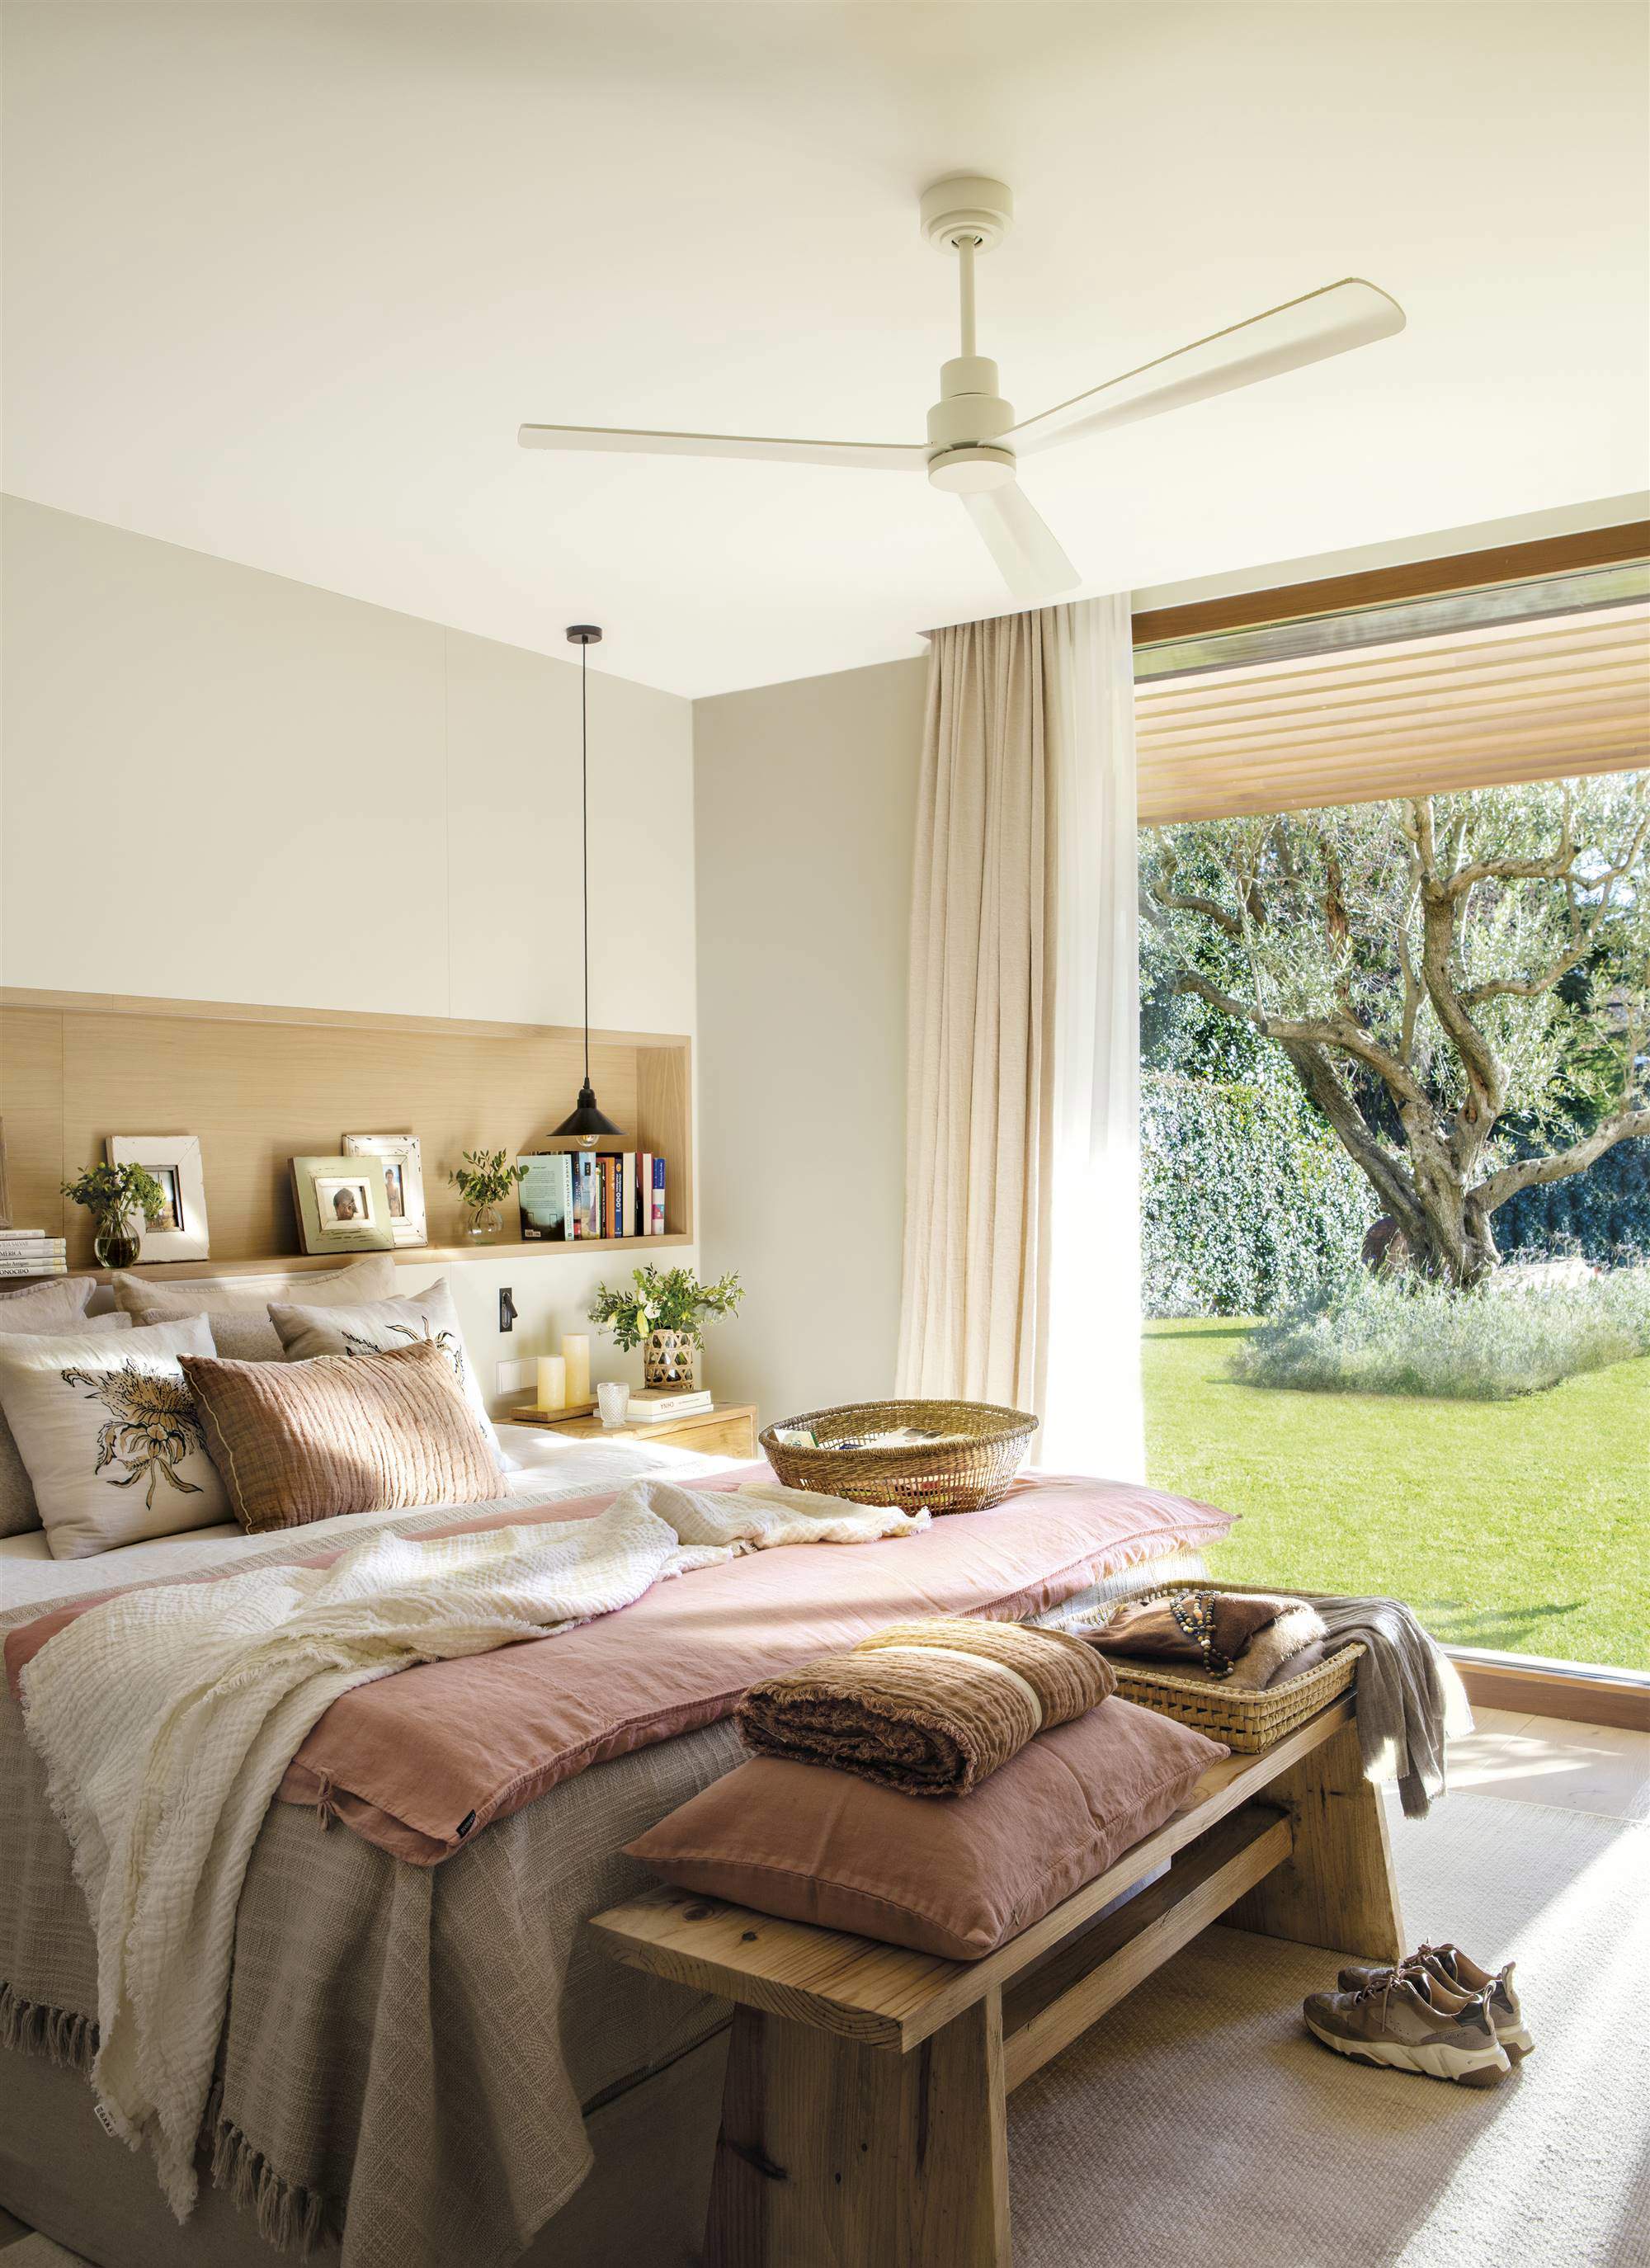 Dormitorio de verano moderno con cabecero en hornacina y ventilador de techo.